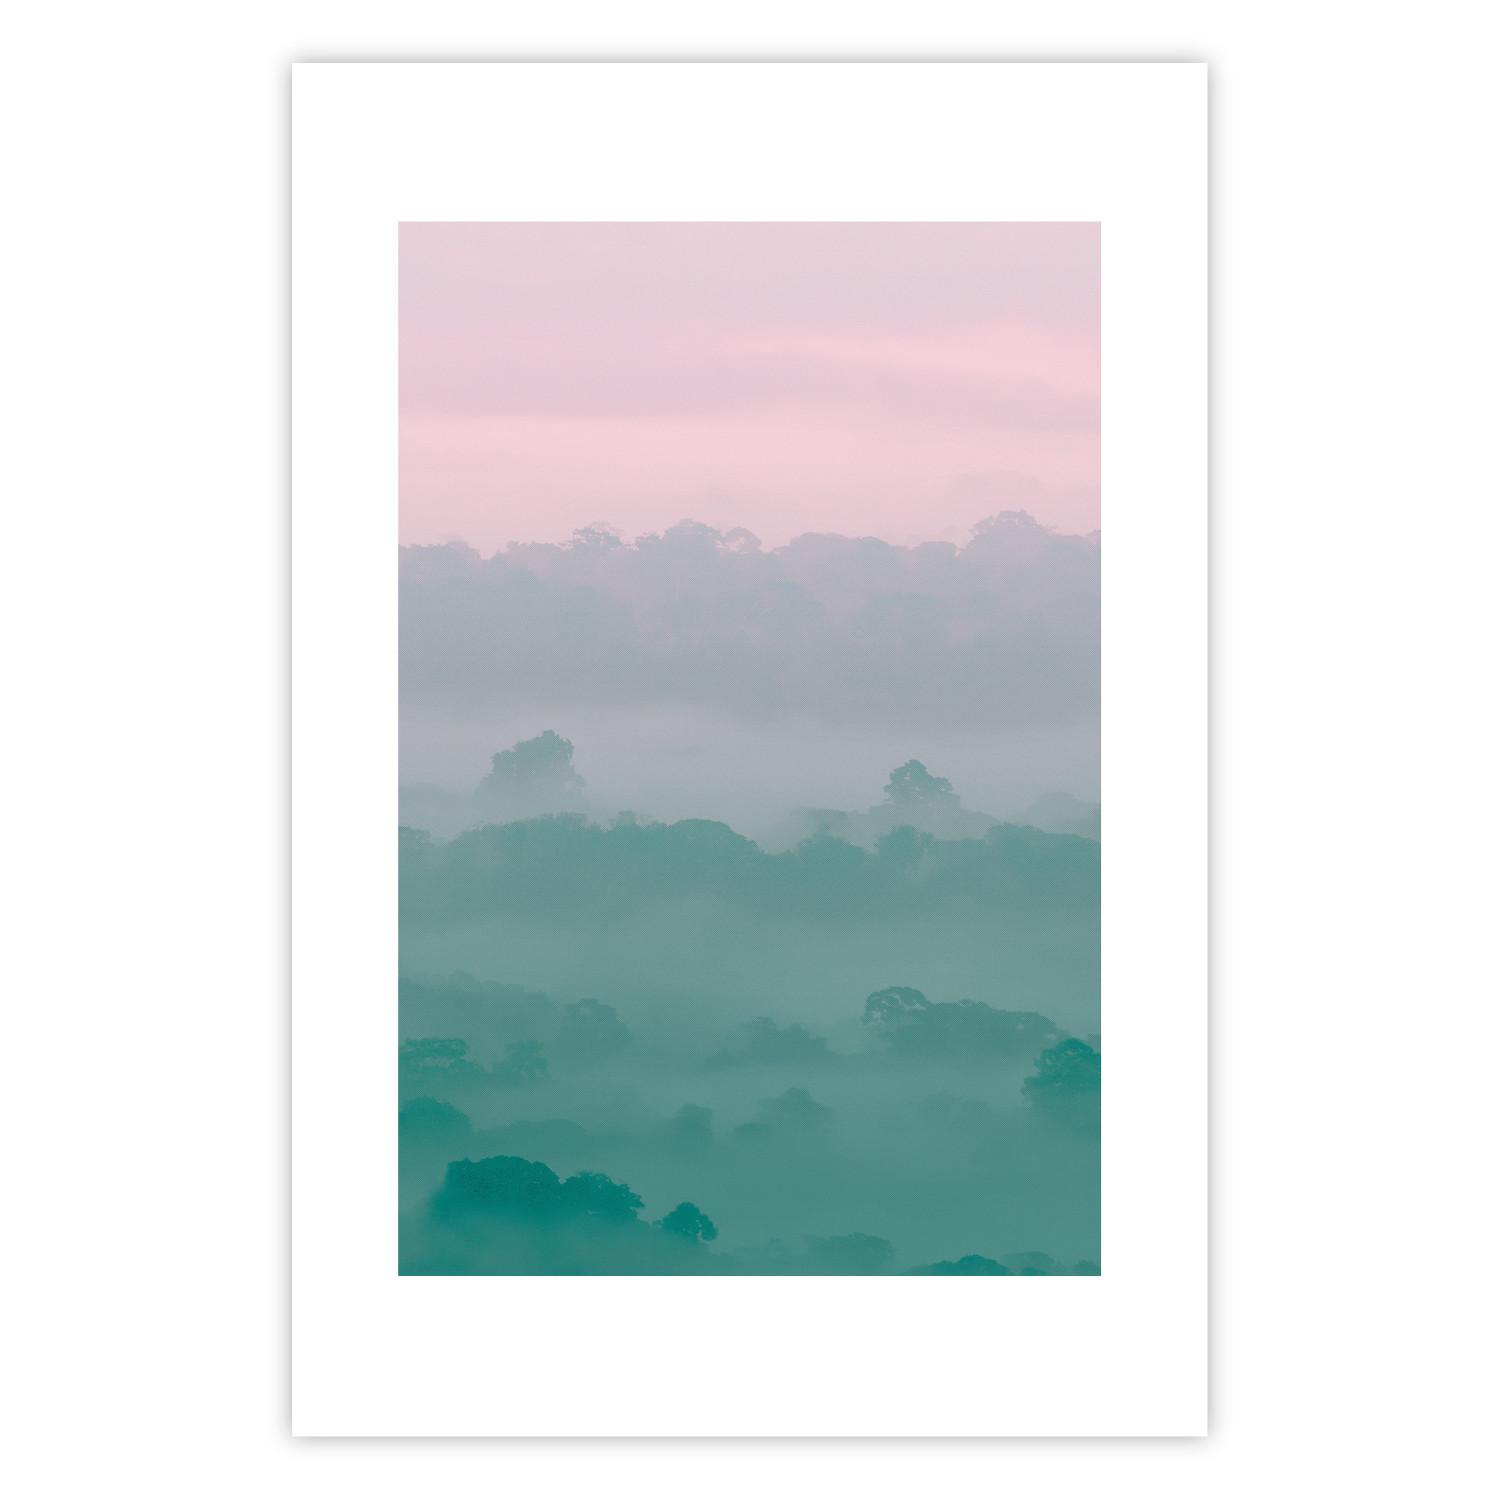 Cartel Amanecer neblinoso - paisaje arbolado niebla pastel